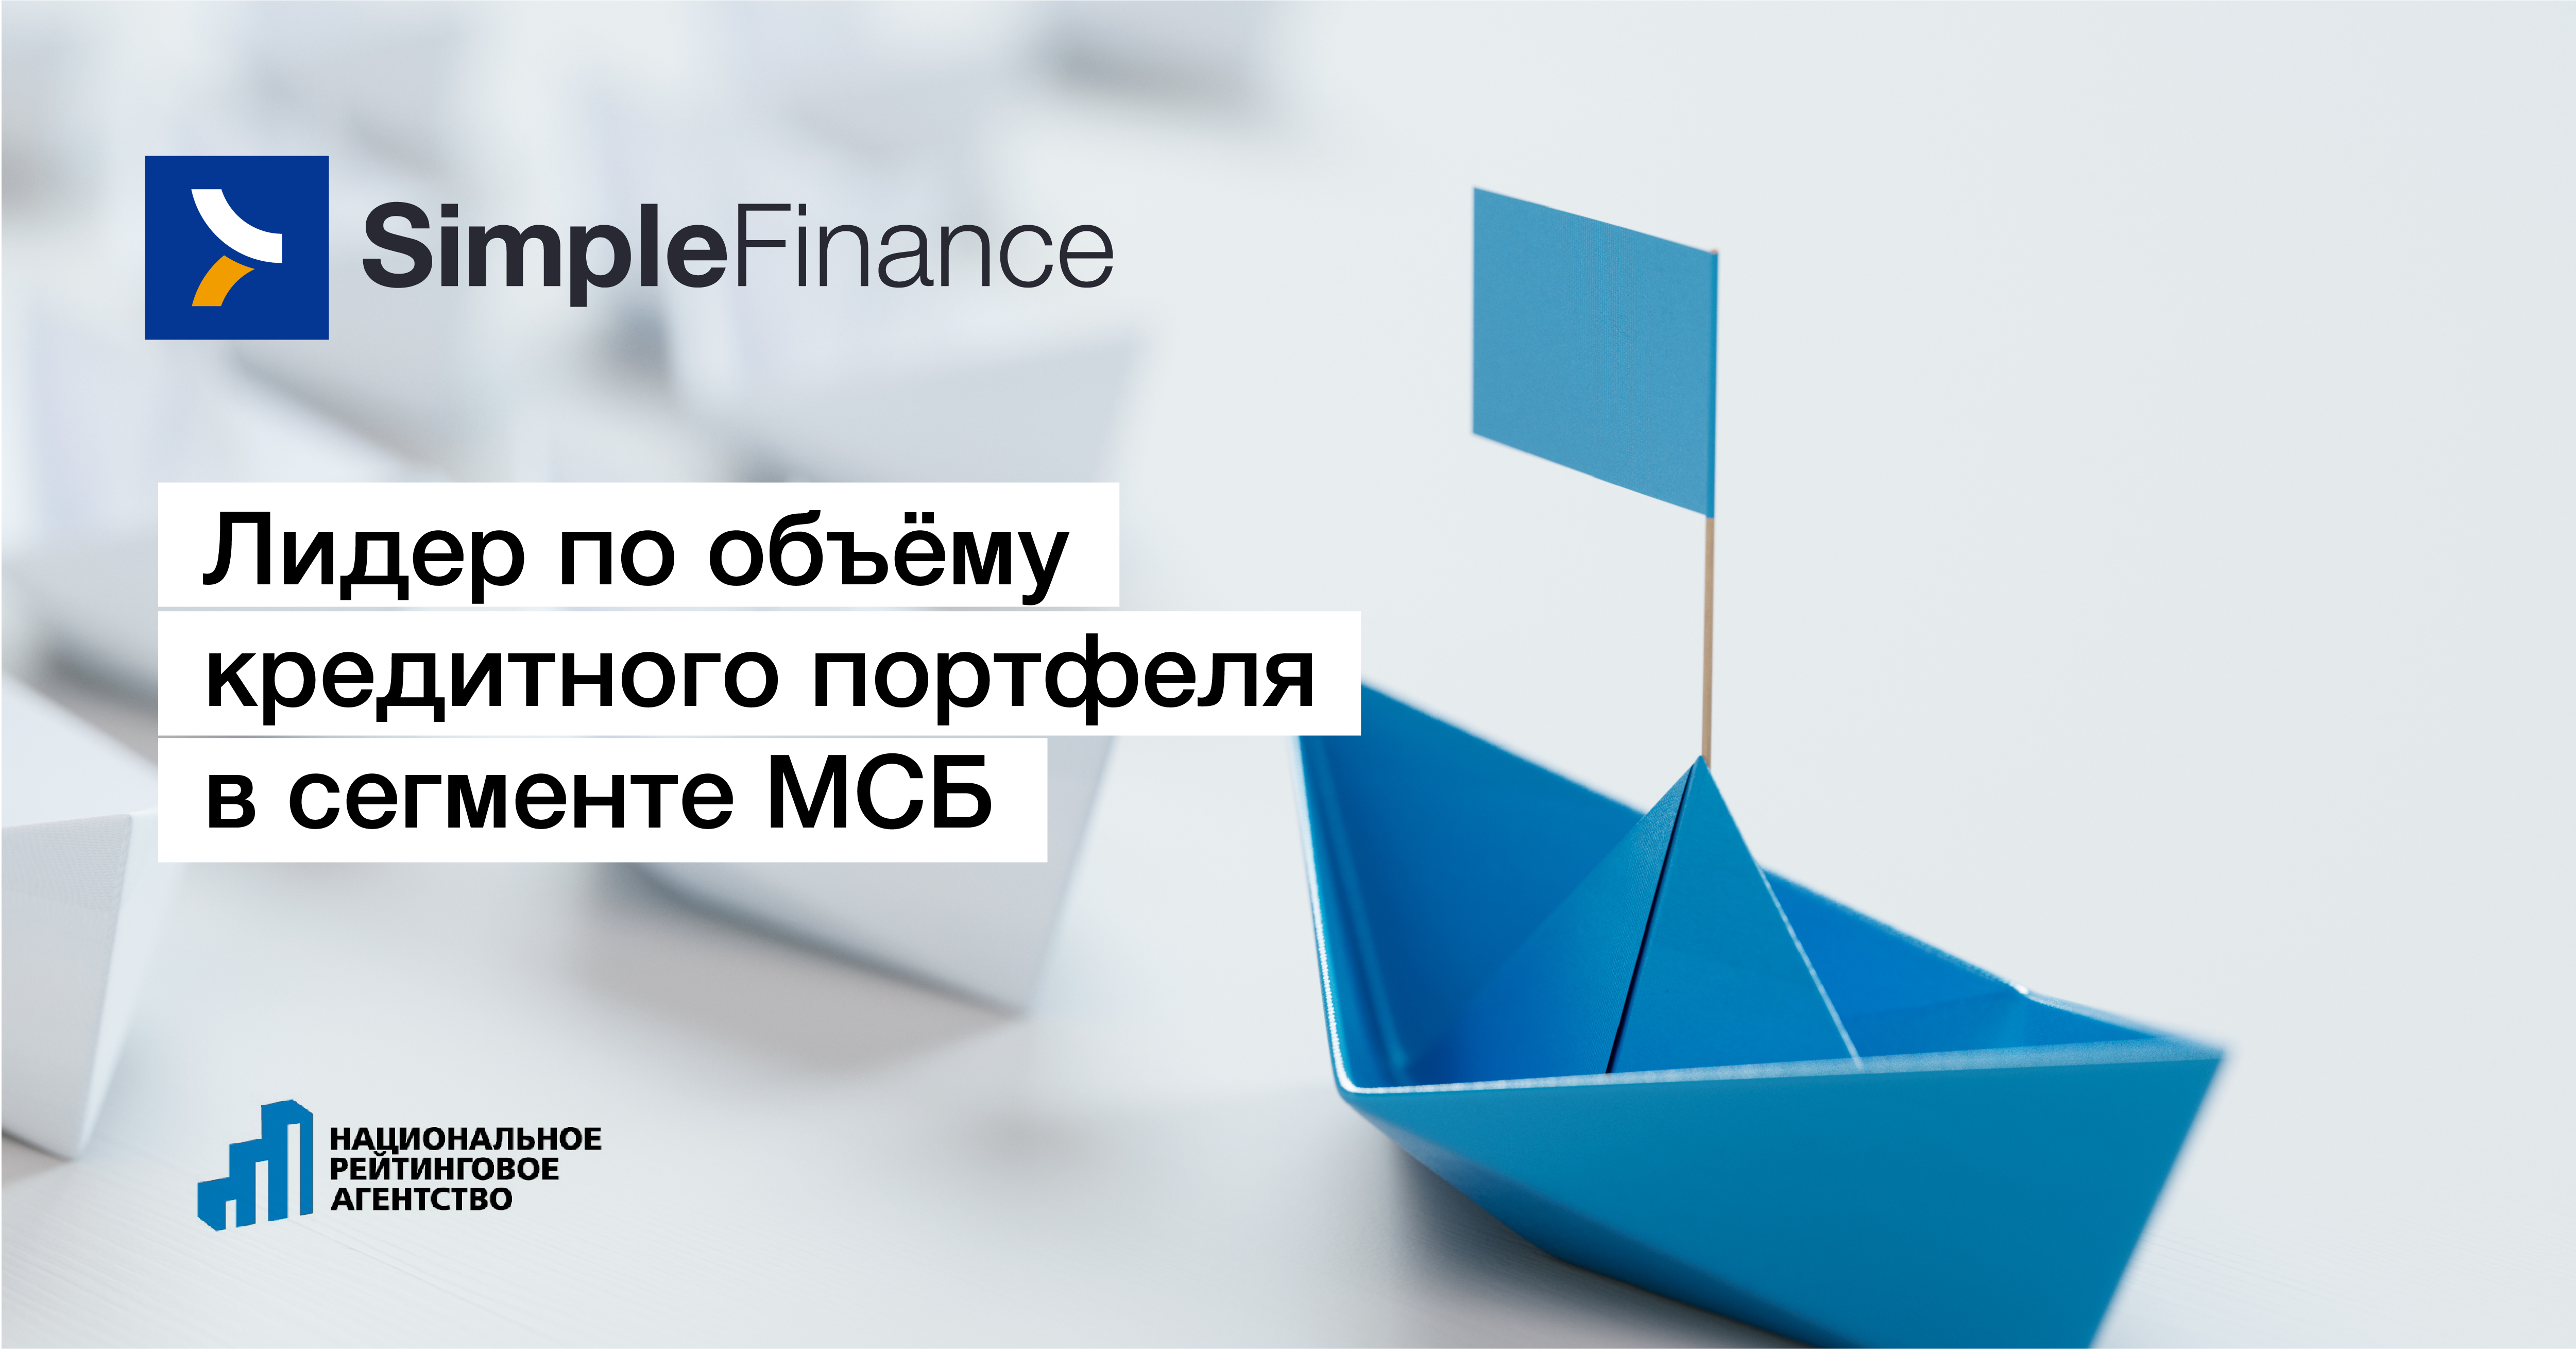 SimpleFinance вновь возглавила рейтинг микрофинансовых организаций, кредитующих бизнес